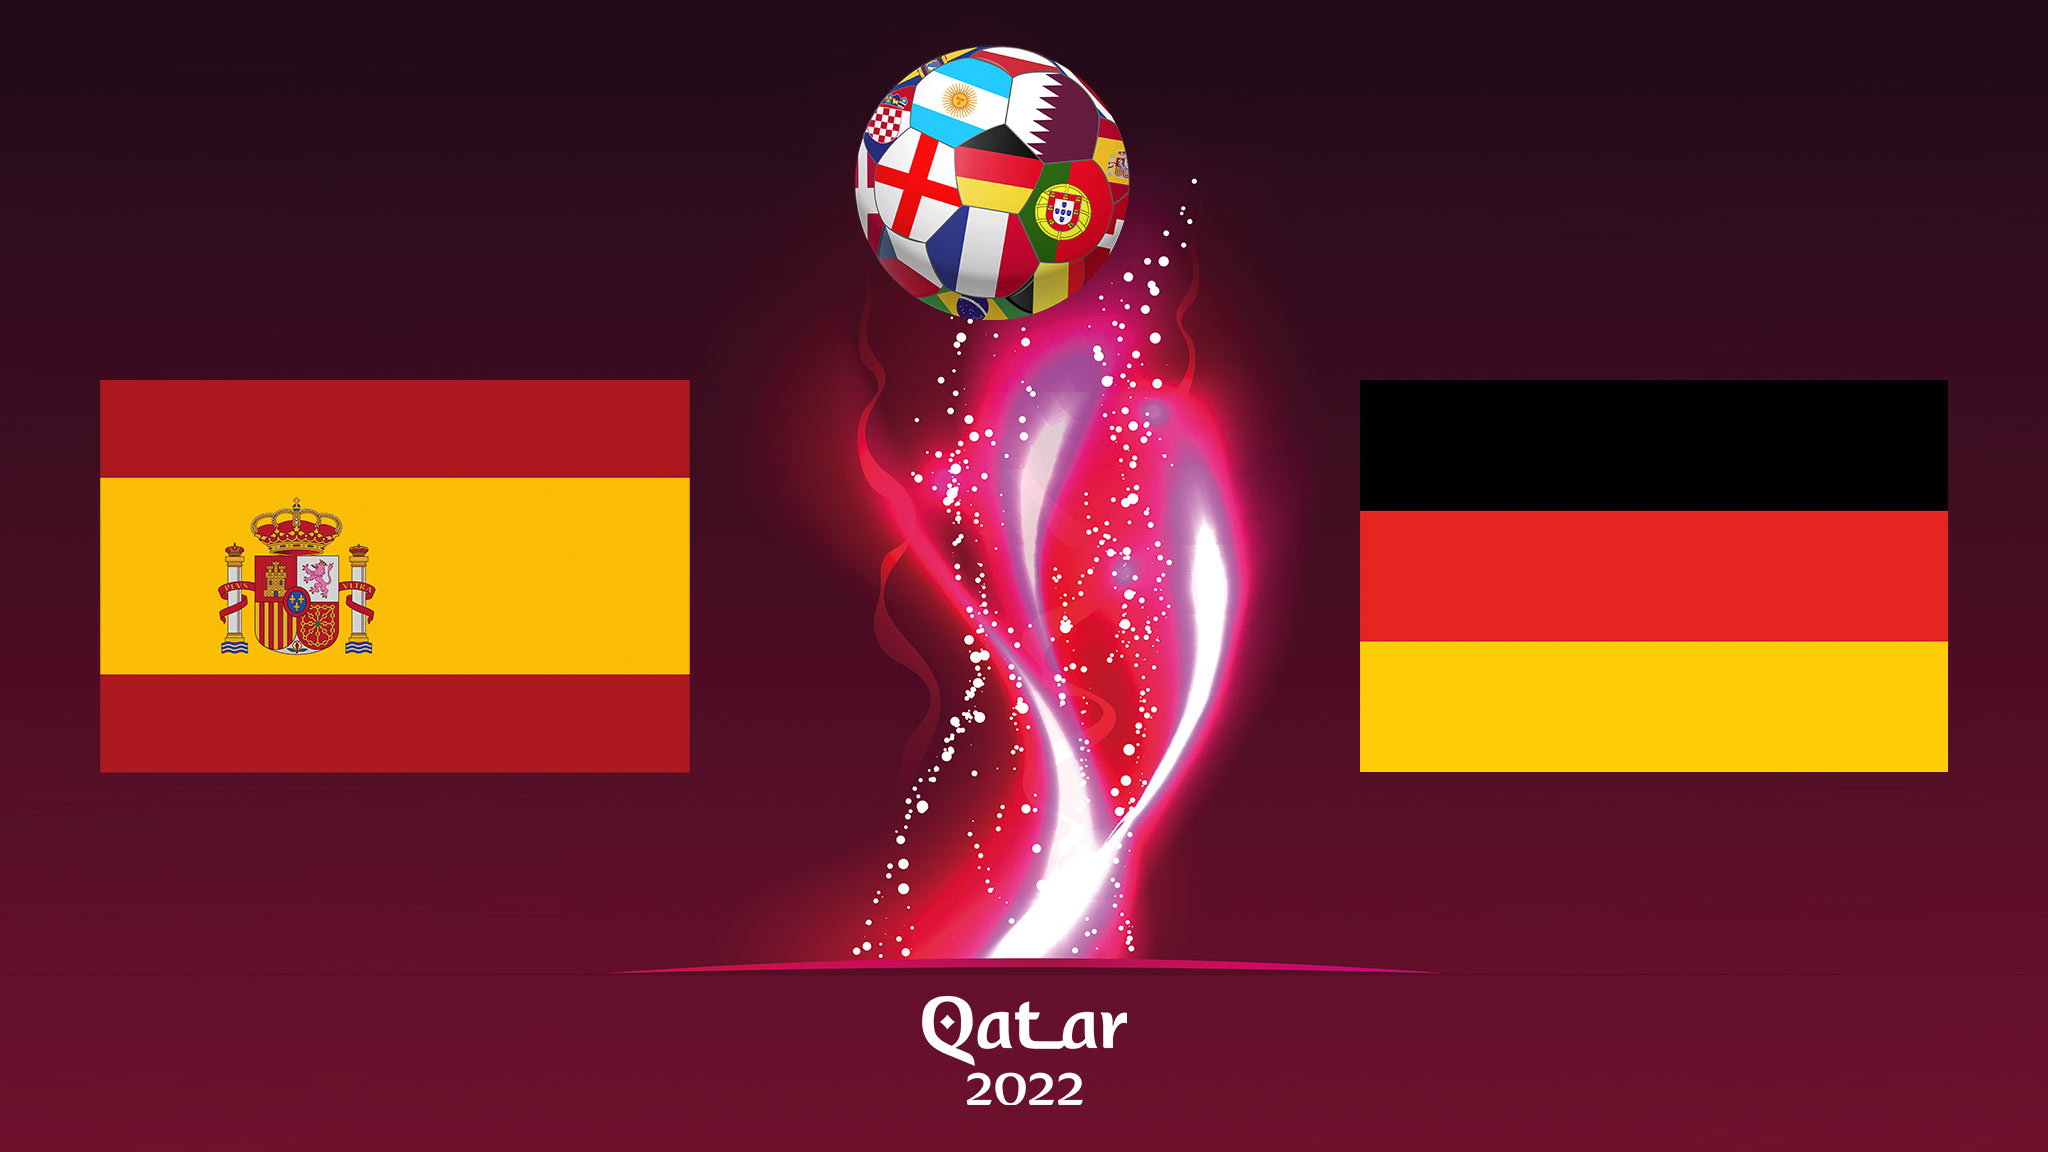 WM Spanien gegen Deutschland live sehen? So klappt es!